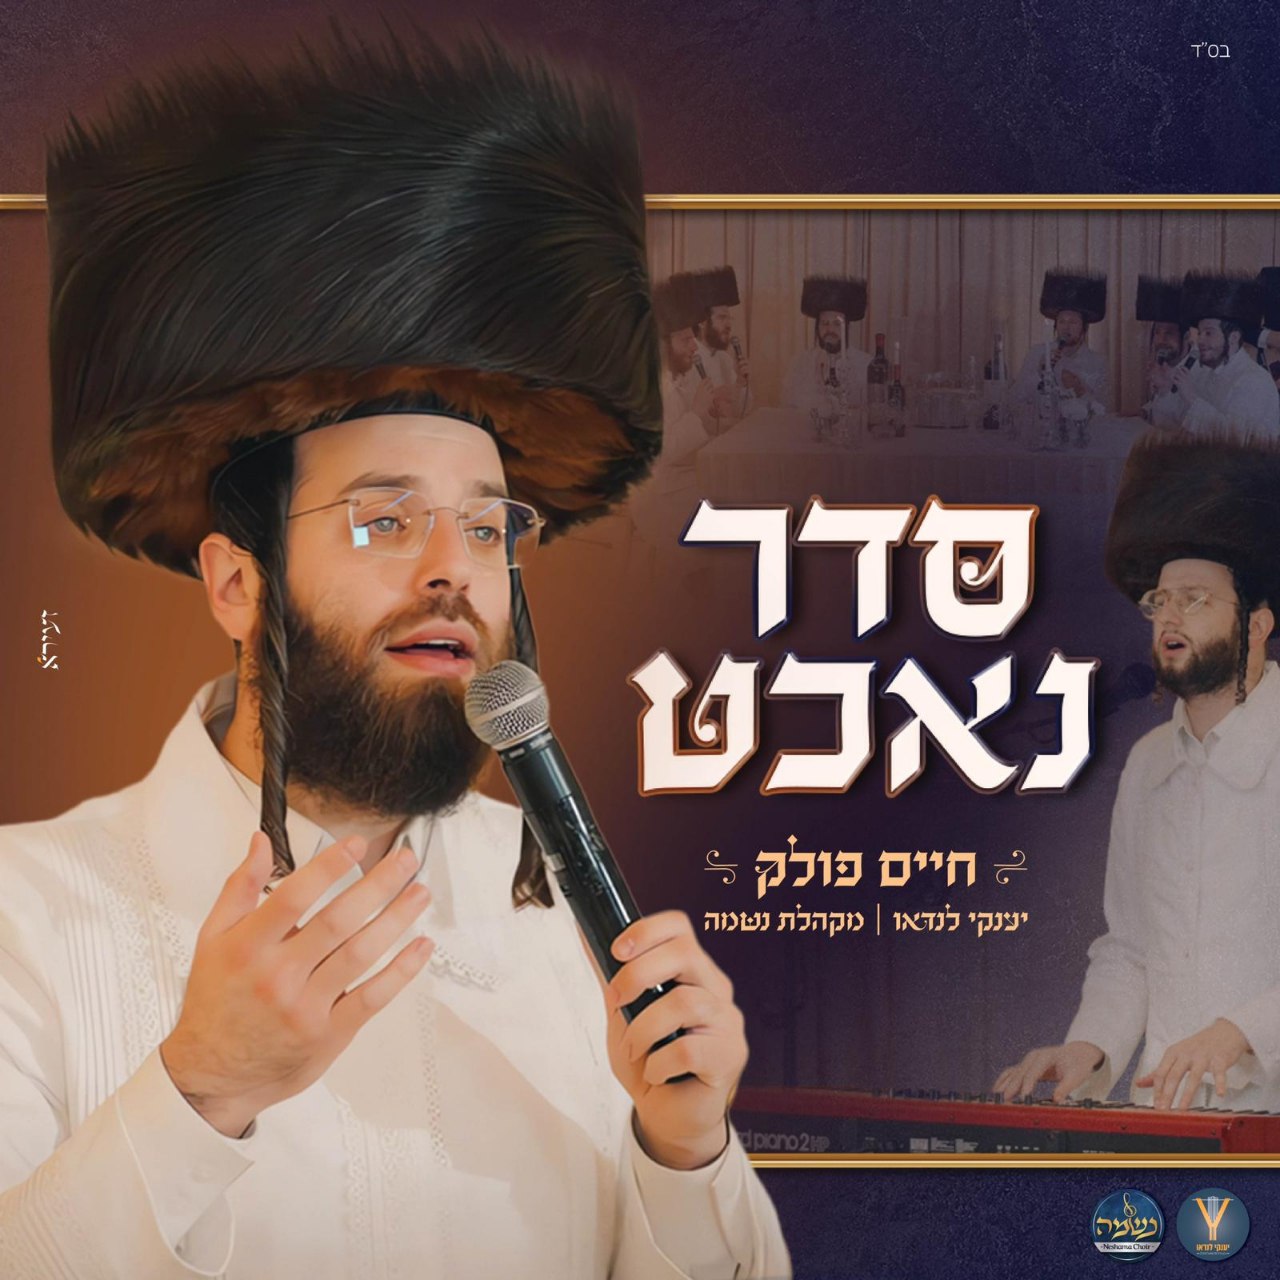 Chaim Polak, Yanky Landau & Neshama Choir - Seder Nacht [Medley] (Single)